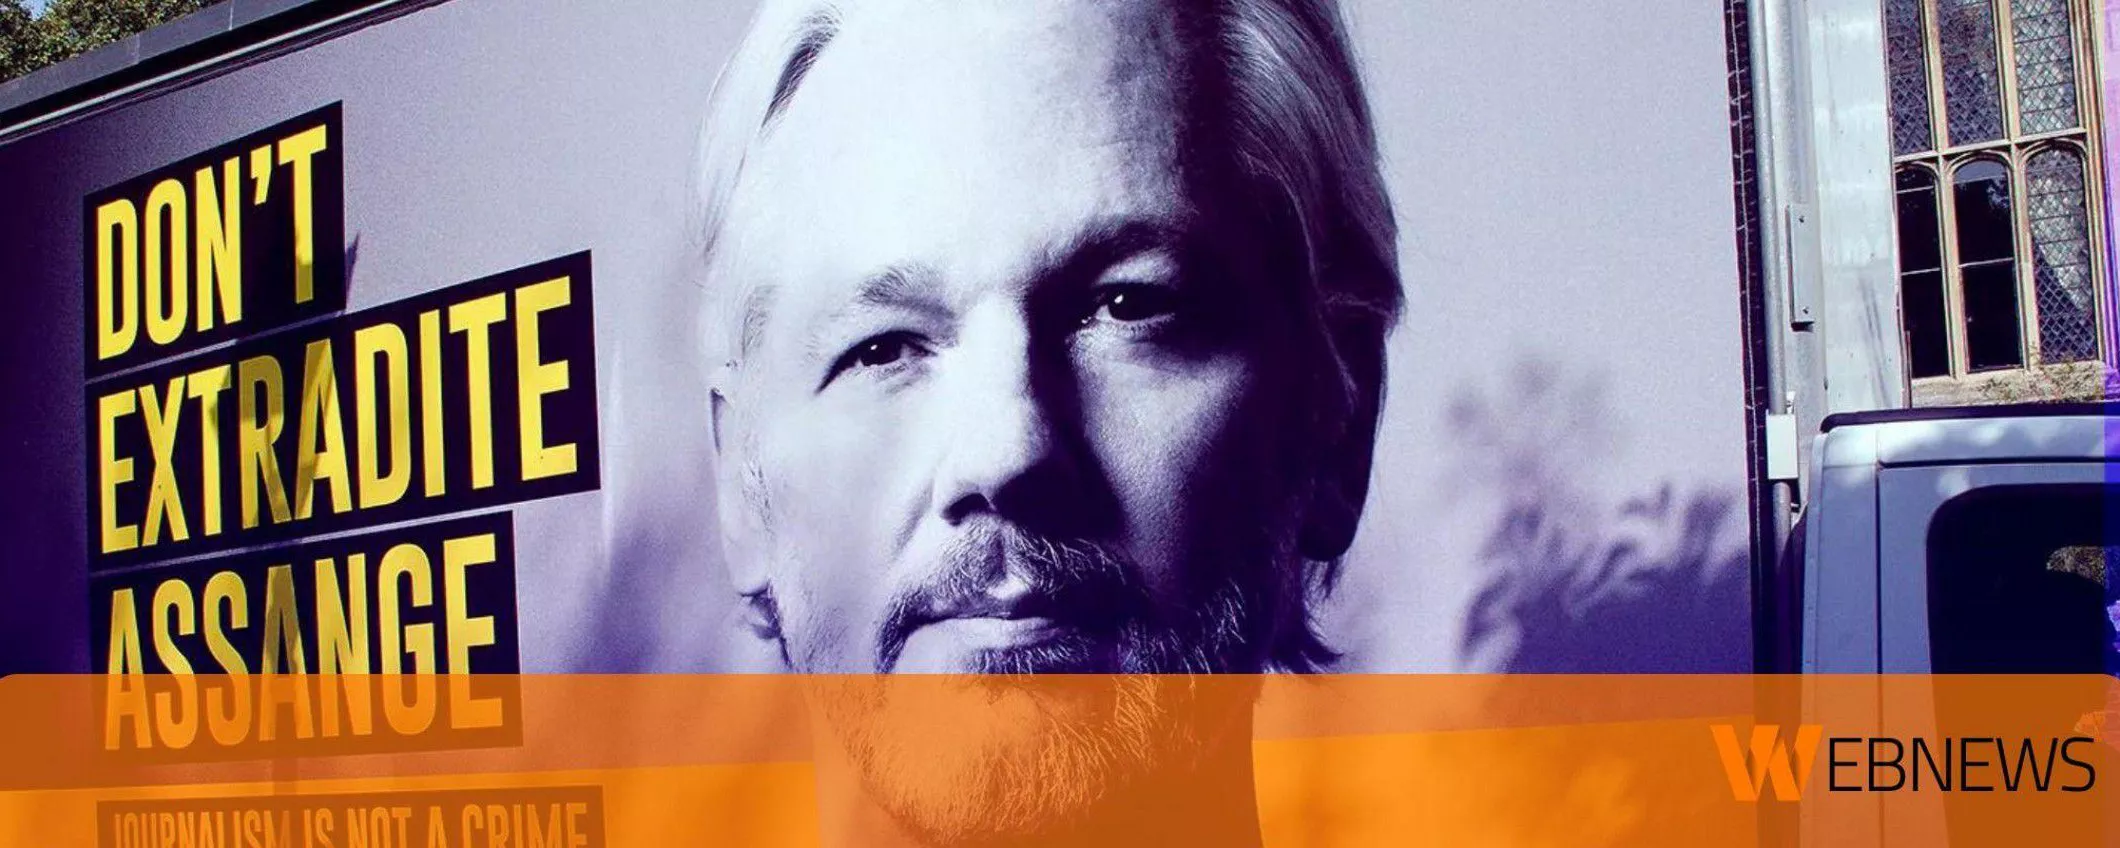 Un trader anonimo ha donato 500.000 dollari in Bitcoin per pagare l'aereo di Julian Assange